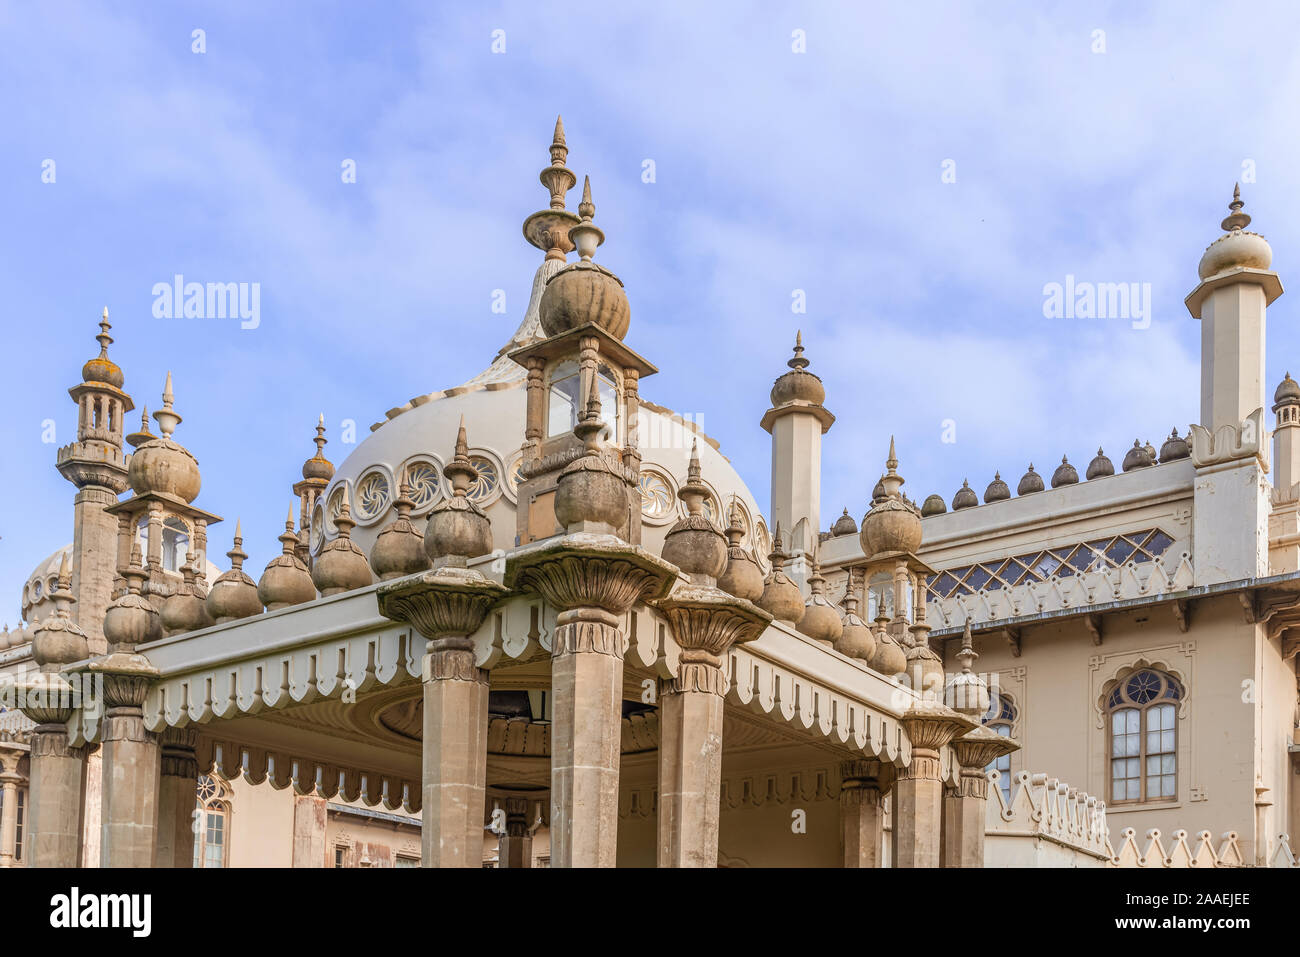 Aspecto trasero de la famosa Royal Pavilion en Brighton. La arquitectura de estilo indio, bajo un cielo azul con nubes. Foto de stock